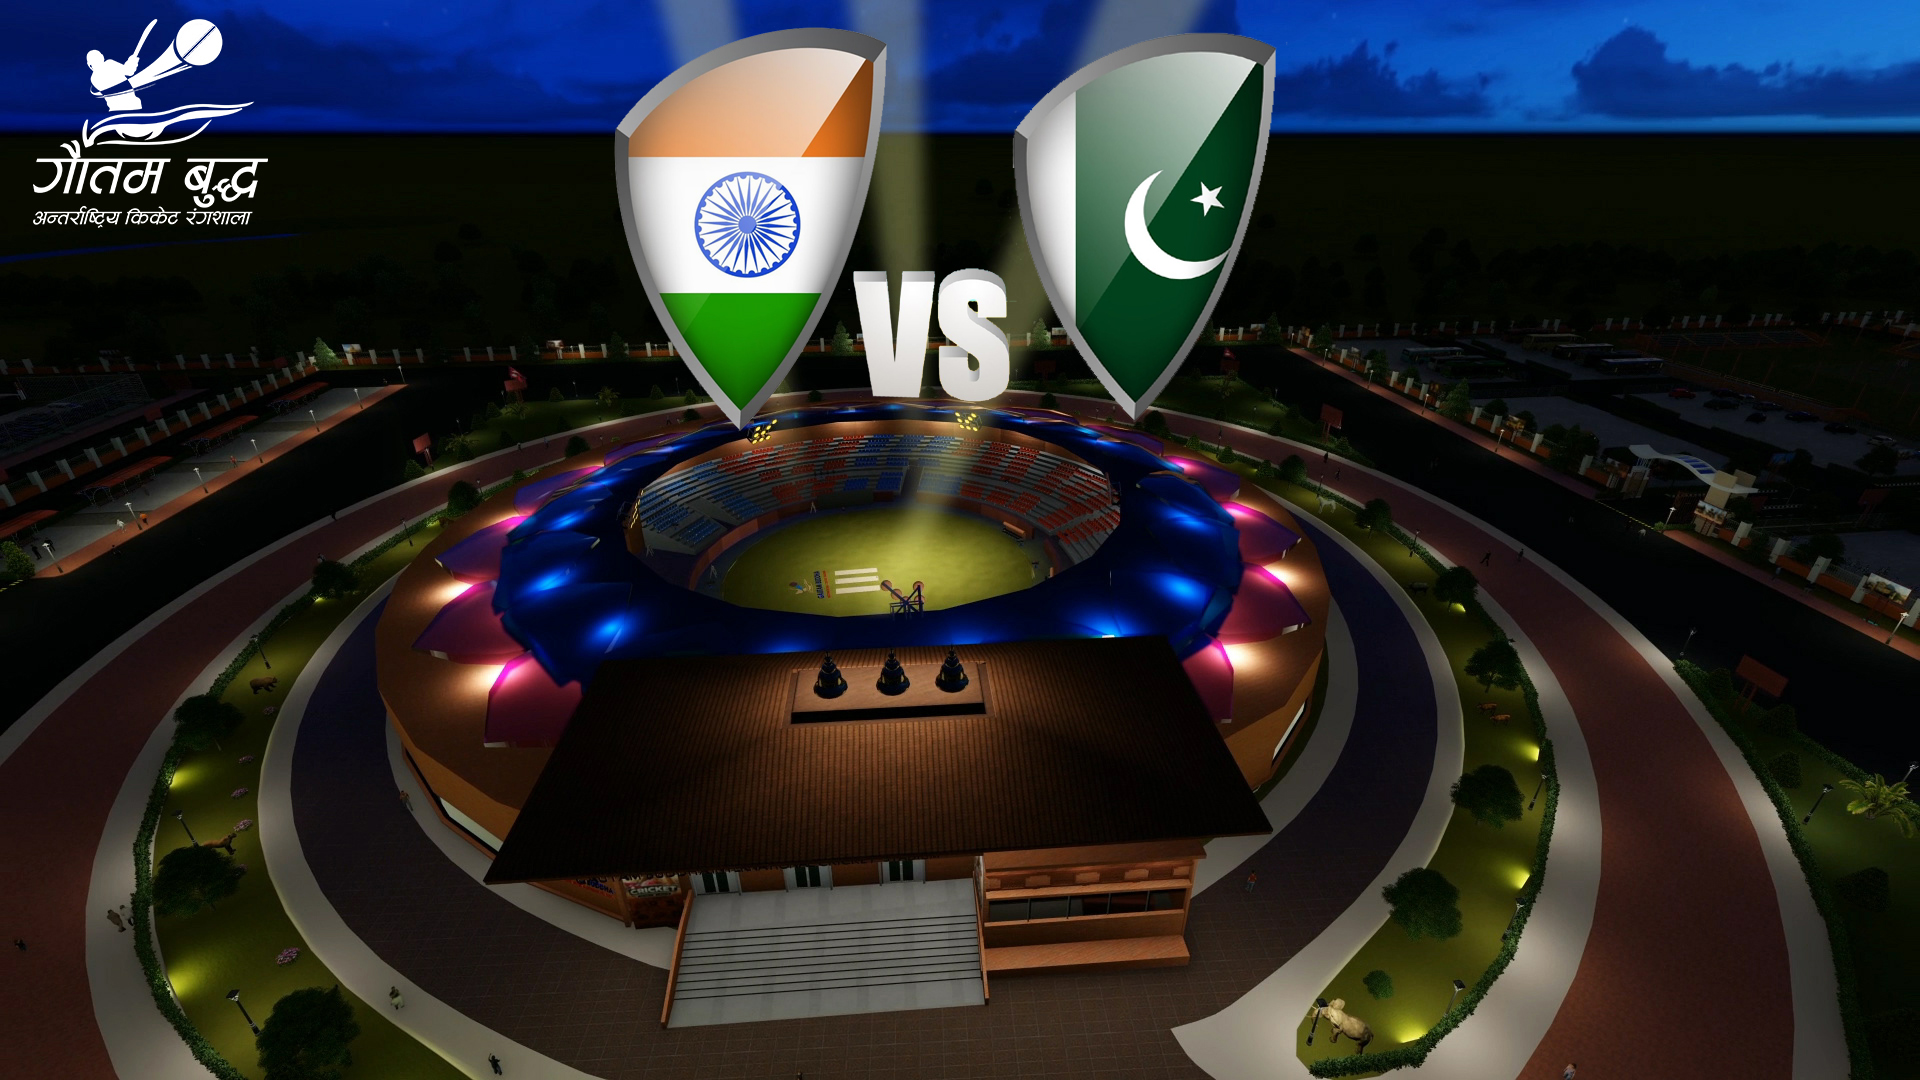 गौतम बुद्ध अन्तर्राष्ट्रिय क्रिकेट रंगशालामा पहिलो म्याच भारत र पाकिस्तानको